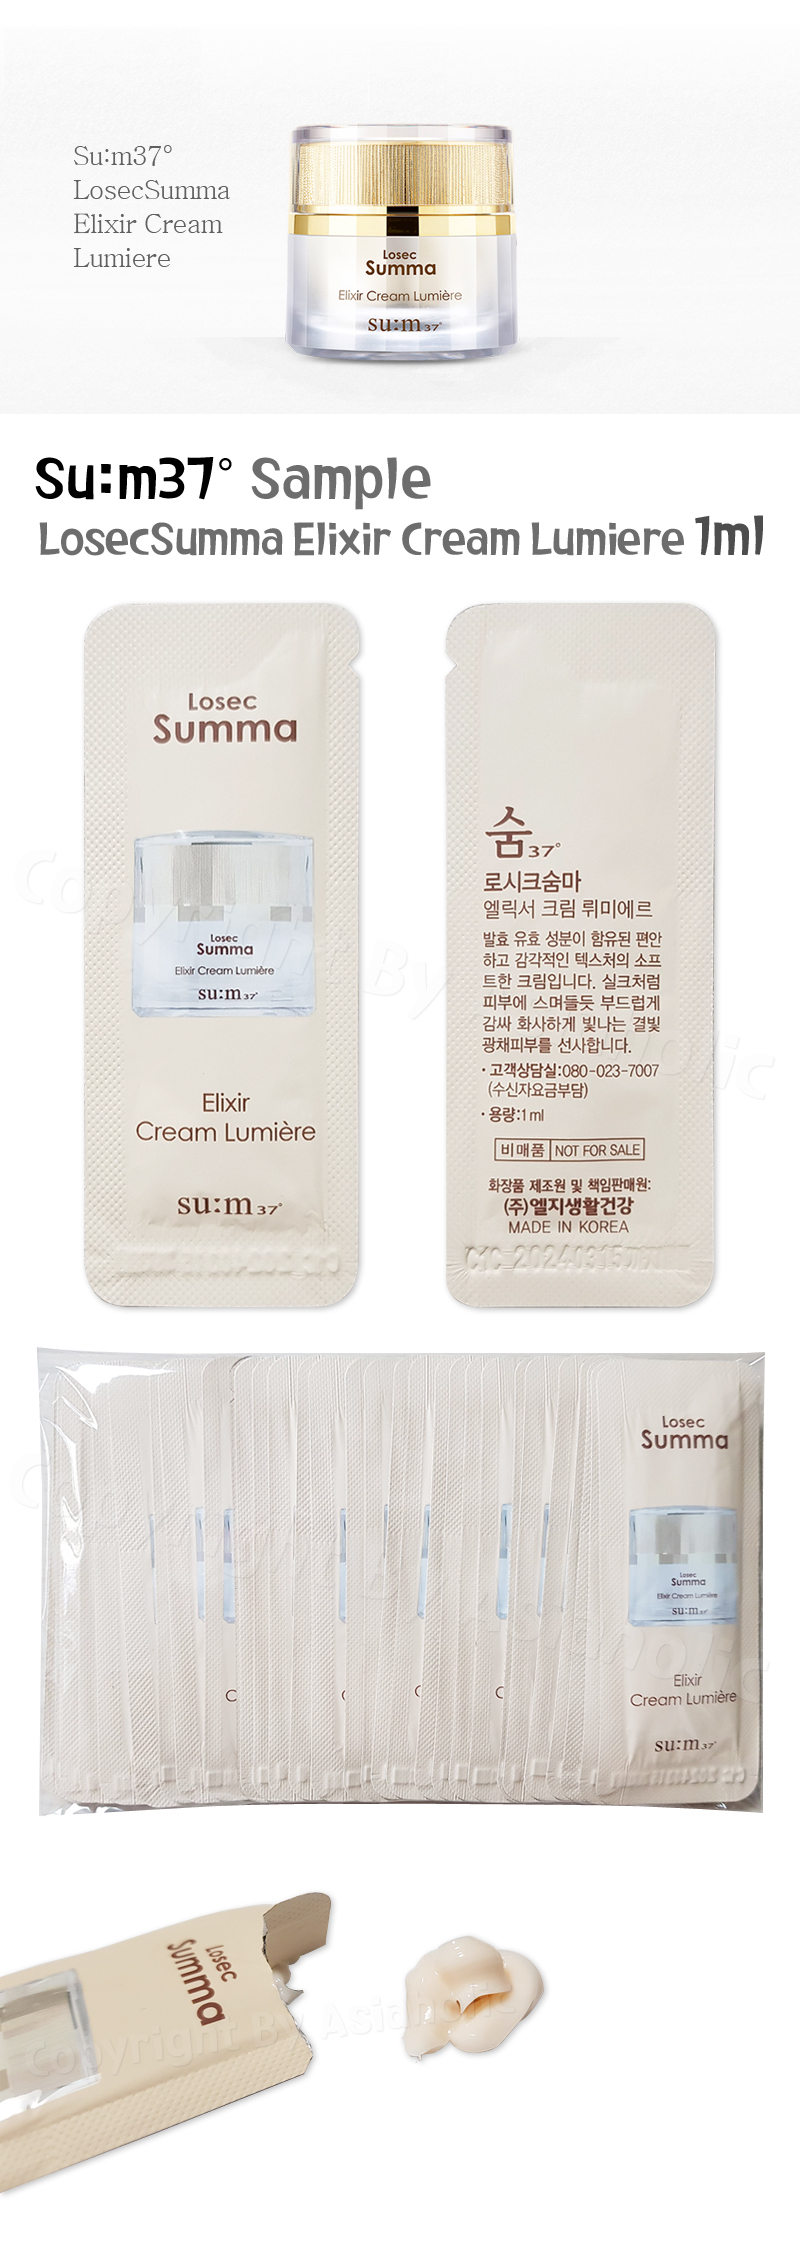 SU:M37 LosecSumma Elixir Cream Lumiere 1ml (10pcs ~ 150pcs) Sample Sum37 Newest Version